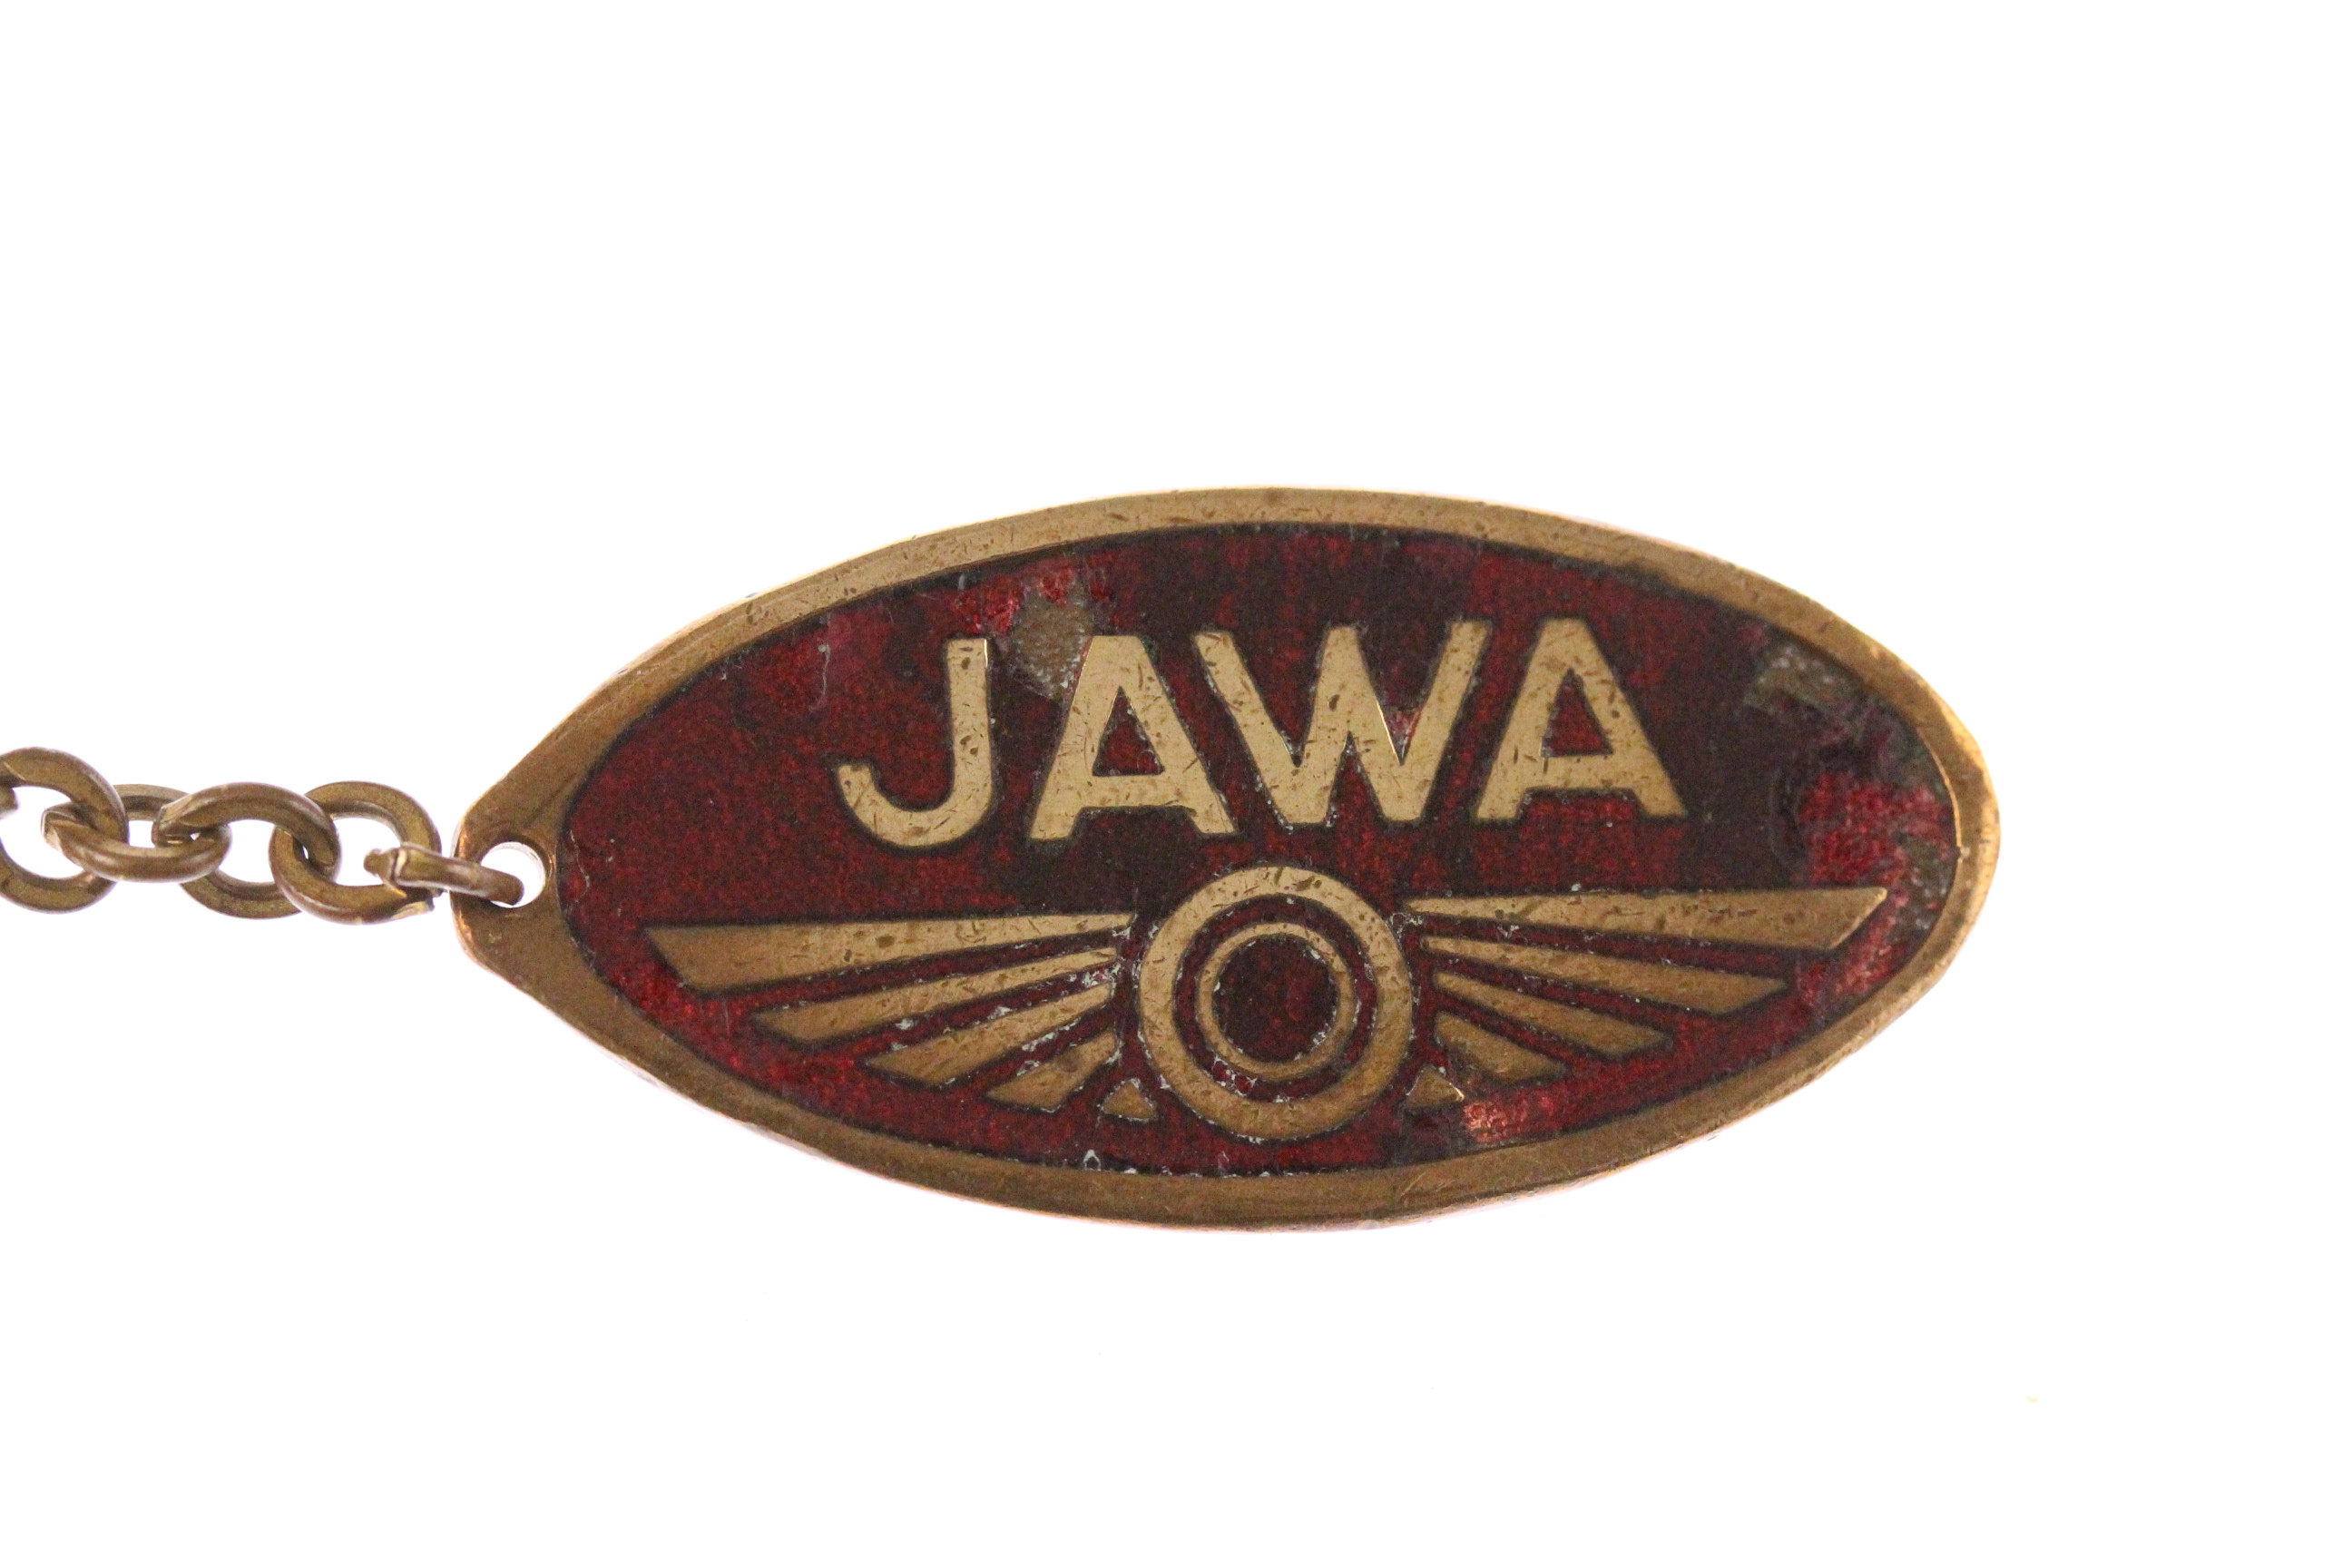  Jawa  250 350 original vintage 1950s keychain  collector 